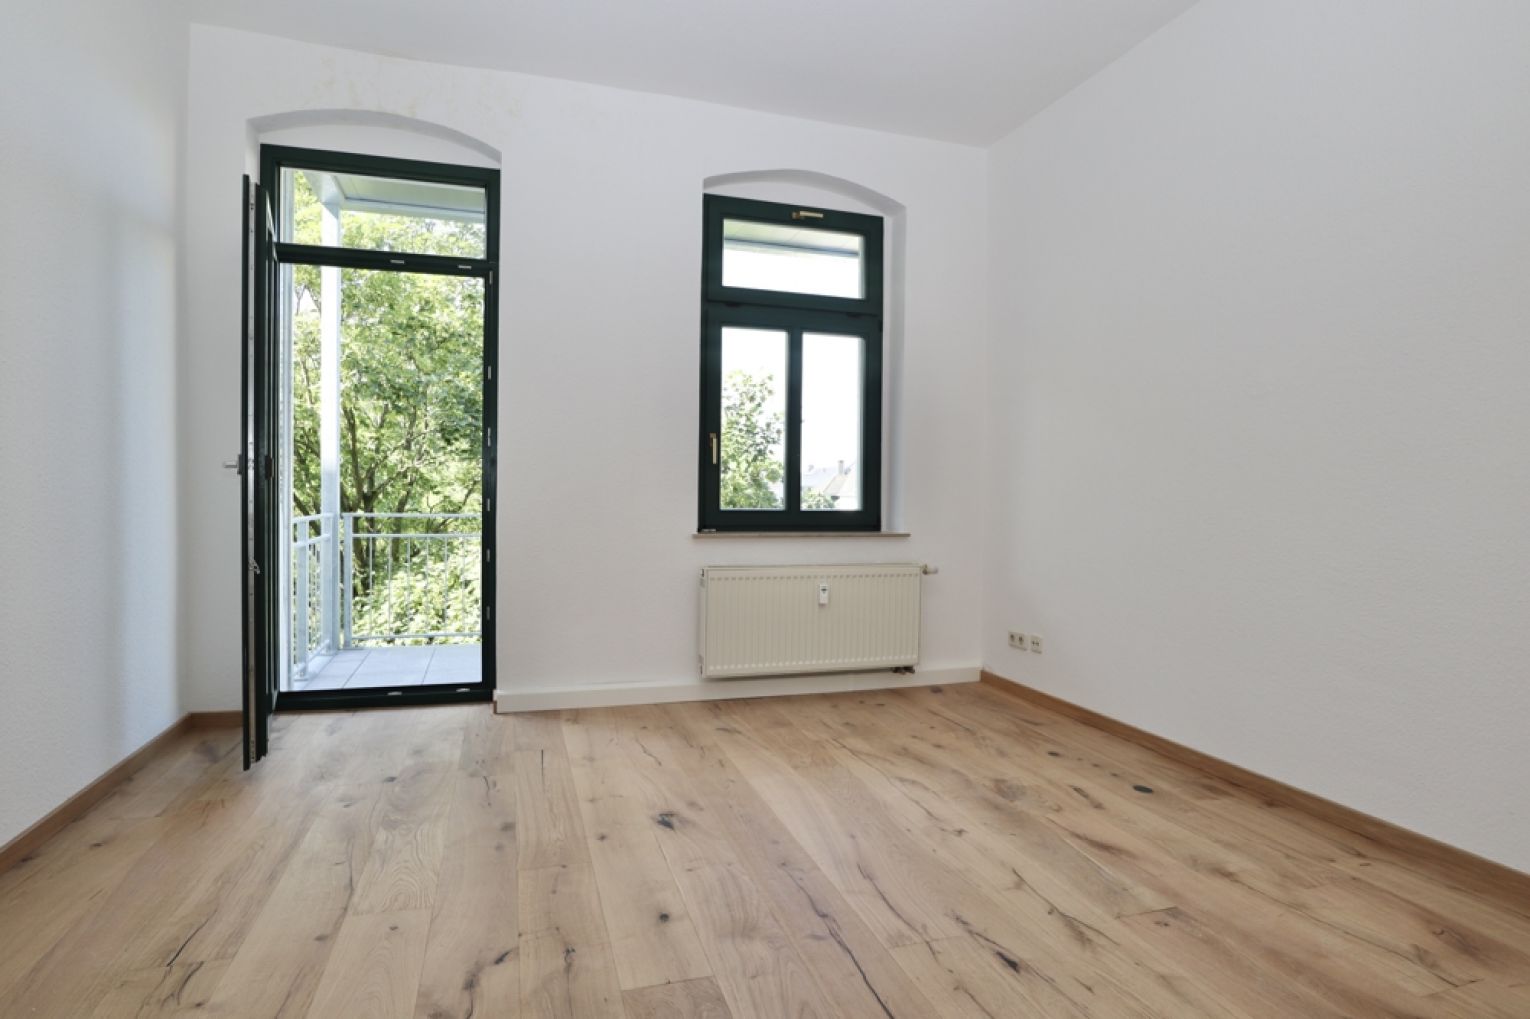 Hilbersdorf • modern • 3-Zimmer Wohnung • neu saniert • Tageslichtbad • Chemnitz • jetzt anrufen